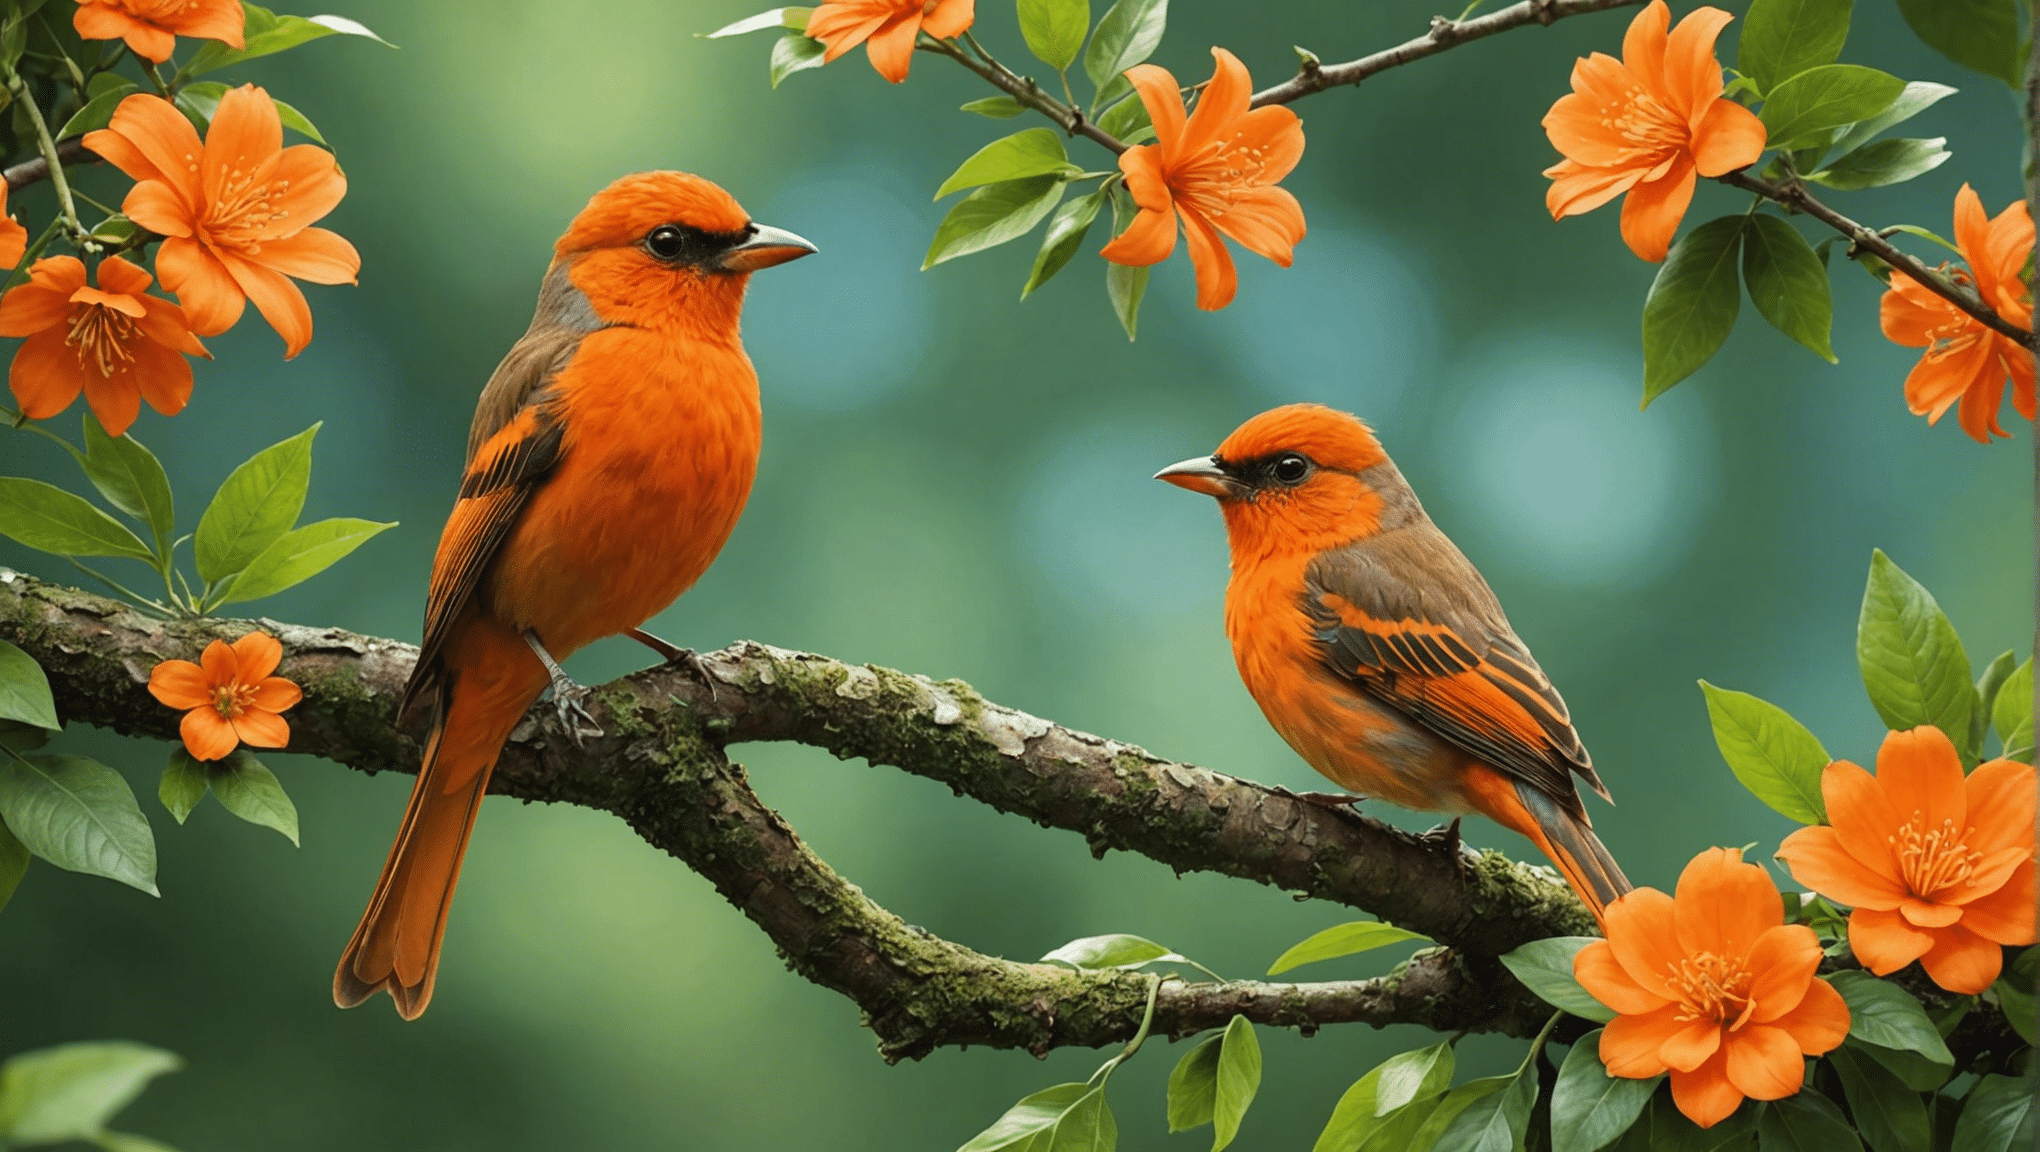 odkryj prawdę o pomarańczowych ptakach: czy istnieją naprawdę, czy tylko mit? poznaj fakty i poznaj rzeczywistość kryjącą się za tajemnicą pomarańczowego ptaka.